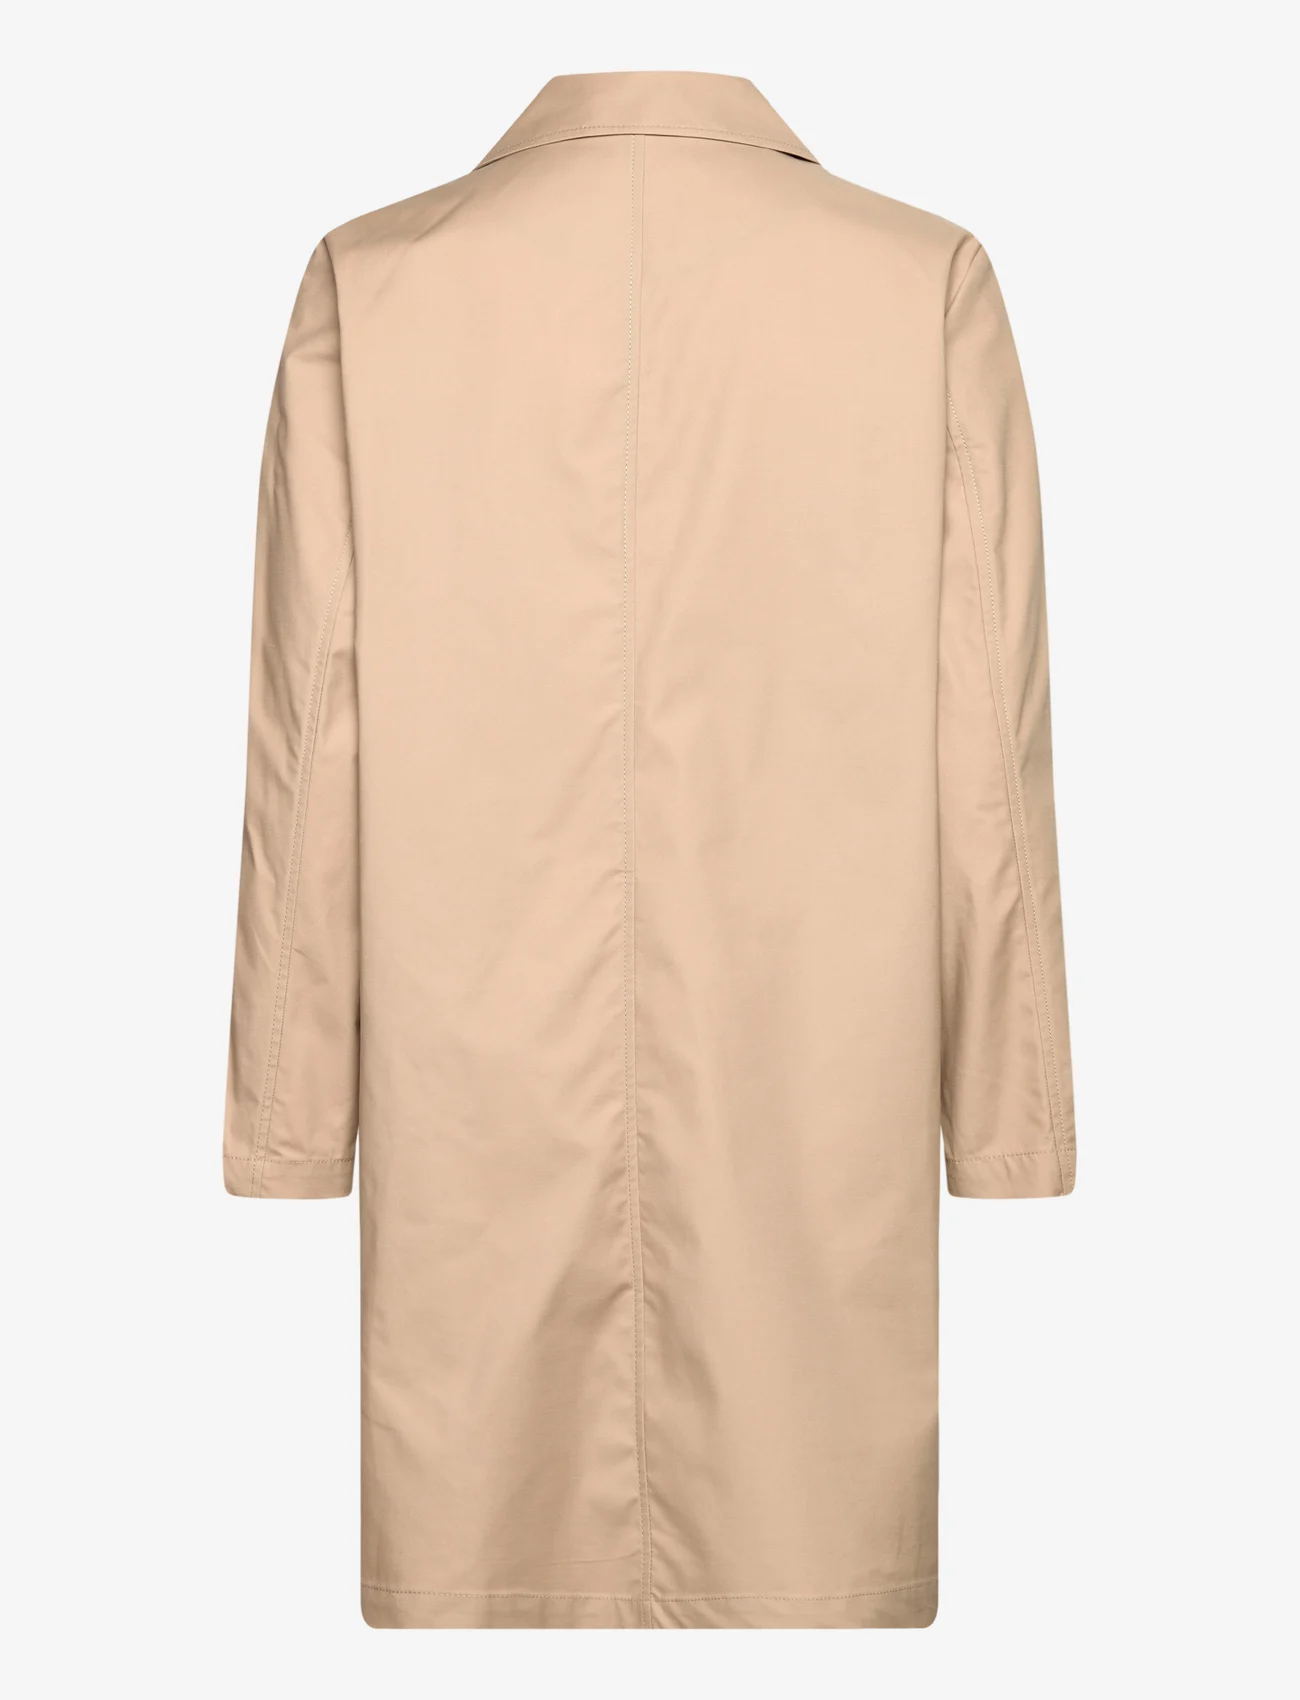 Esprit Casual - Coats woven - light coats - beige - 1